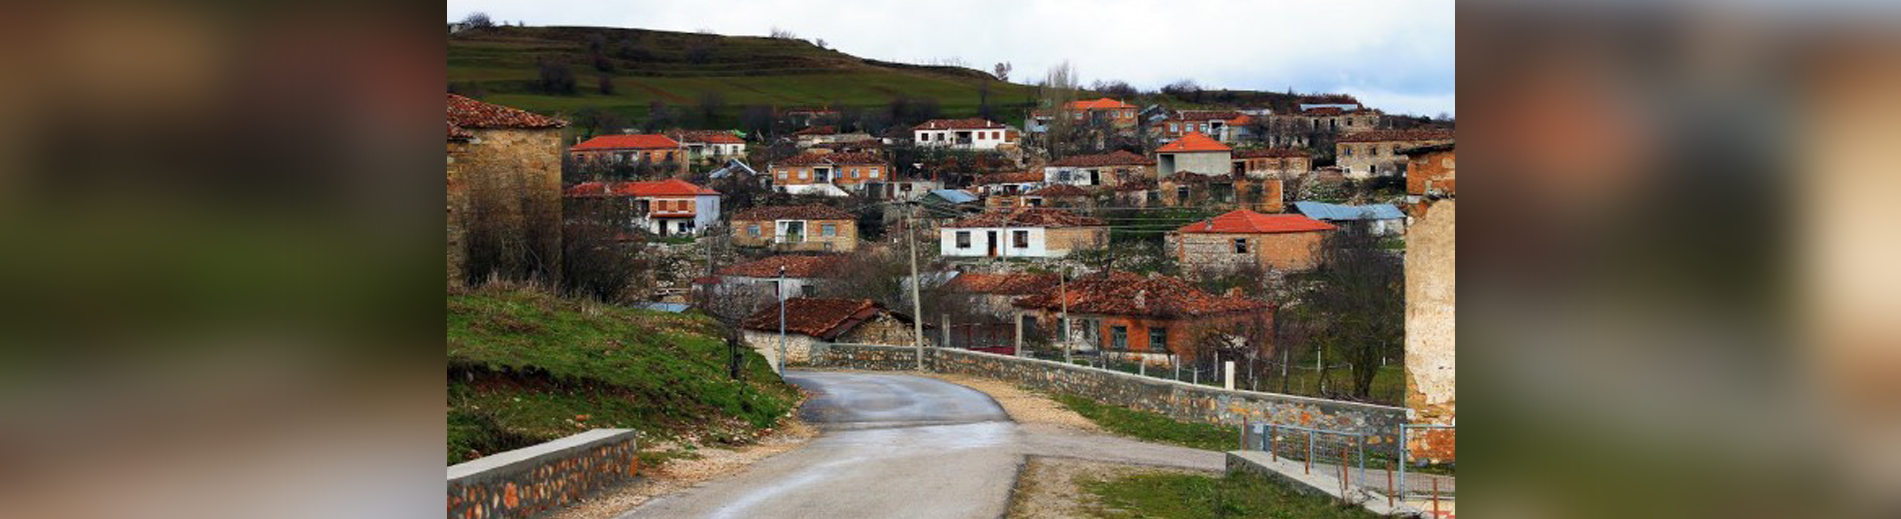 Nuk ka mjekë, banorët në këtë fshat shqiptar i bëjnë gjilpërat njëri-tjetrit